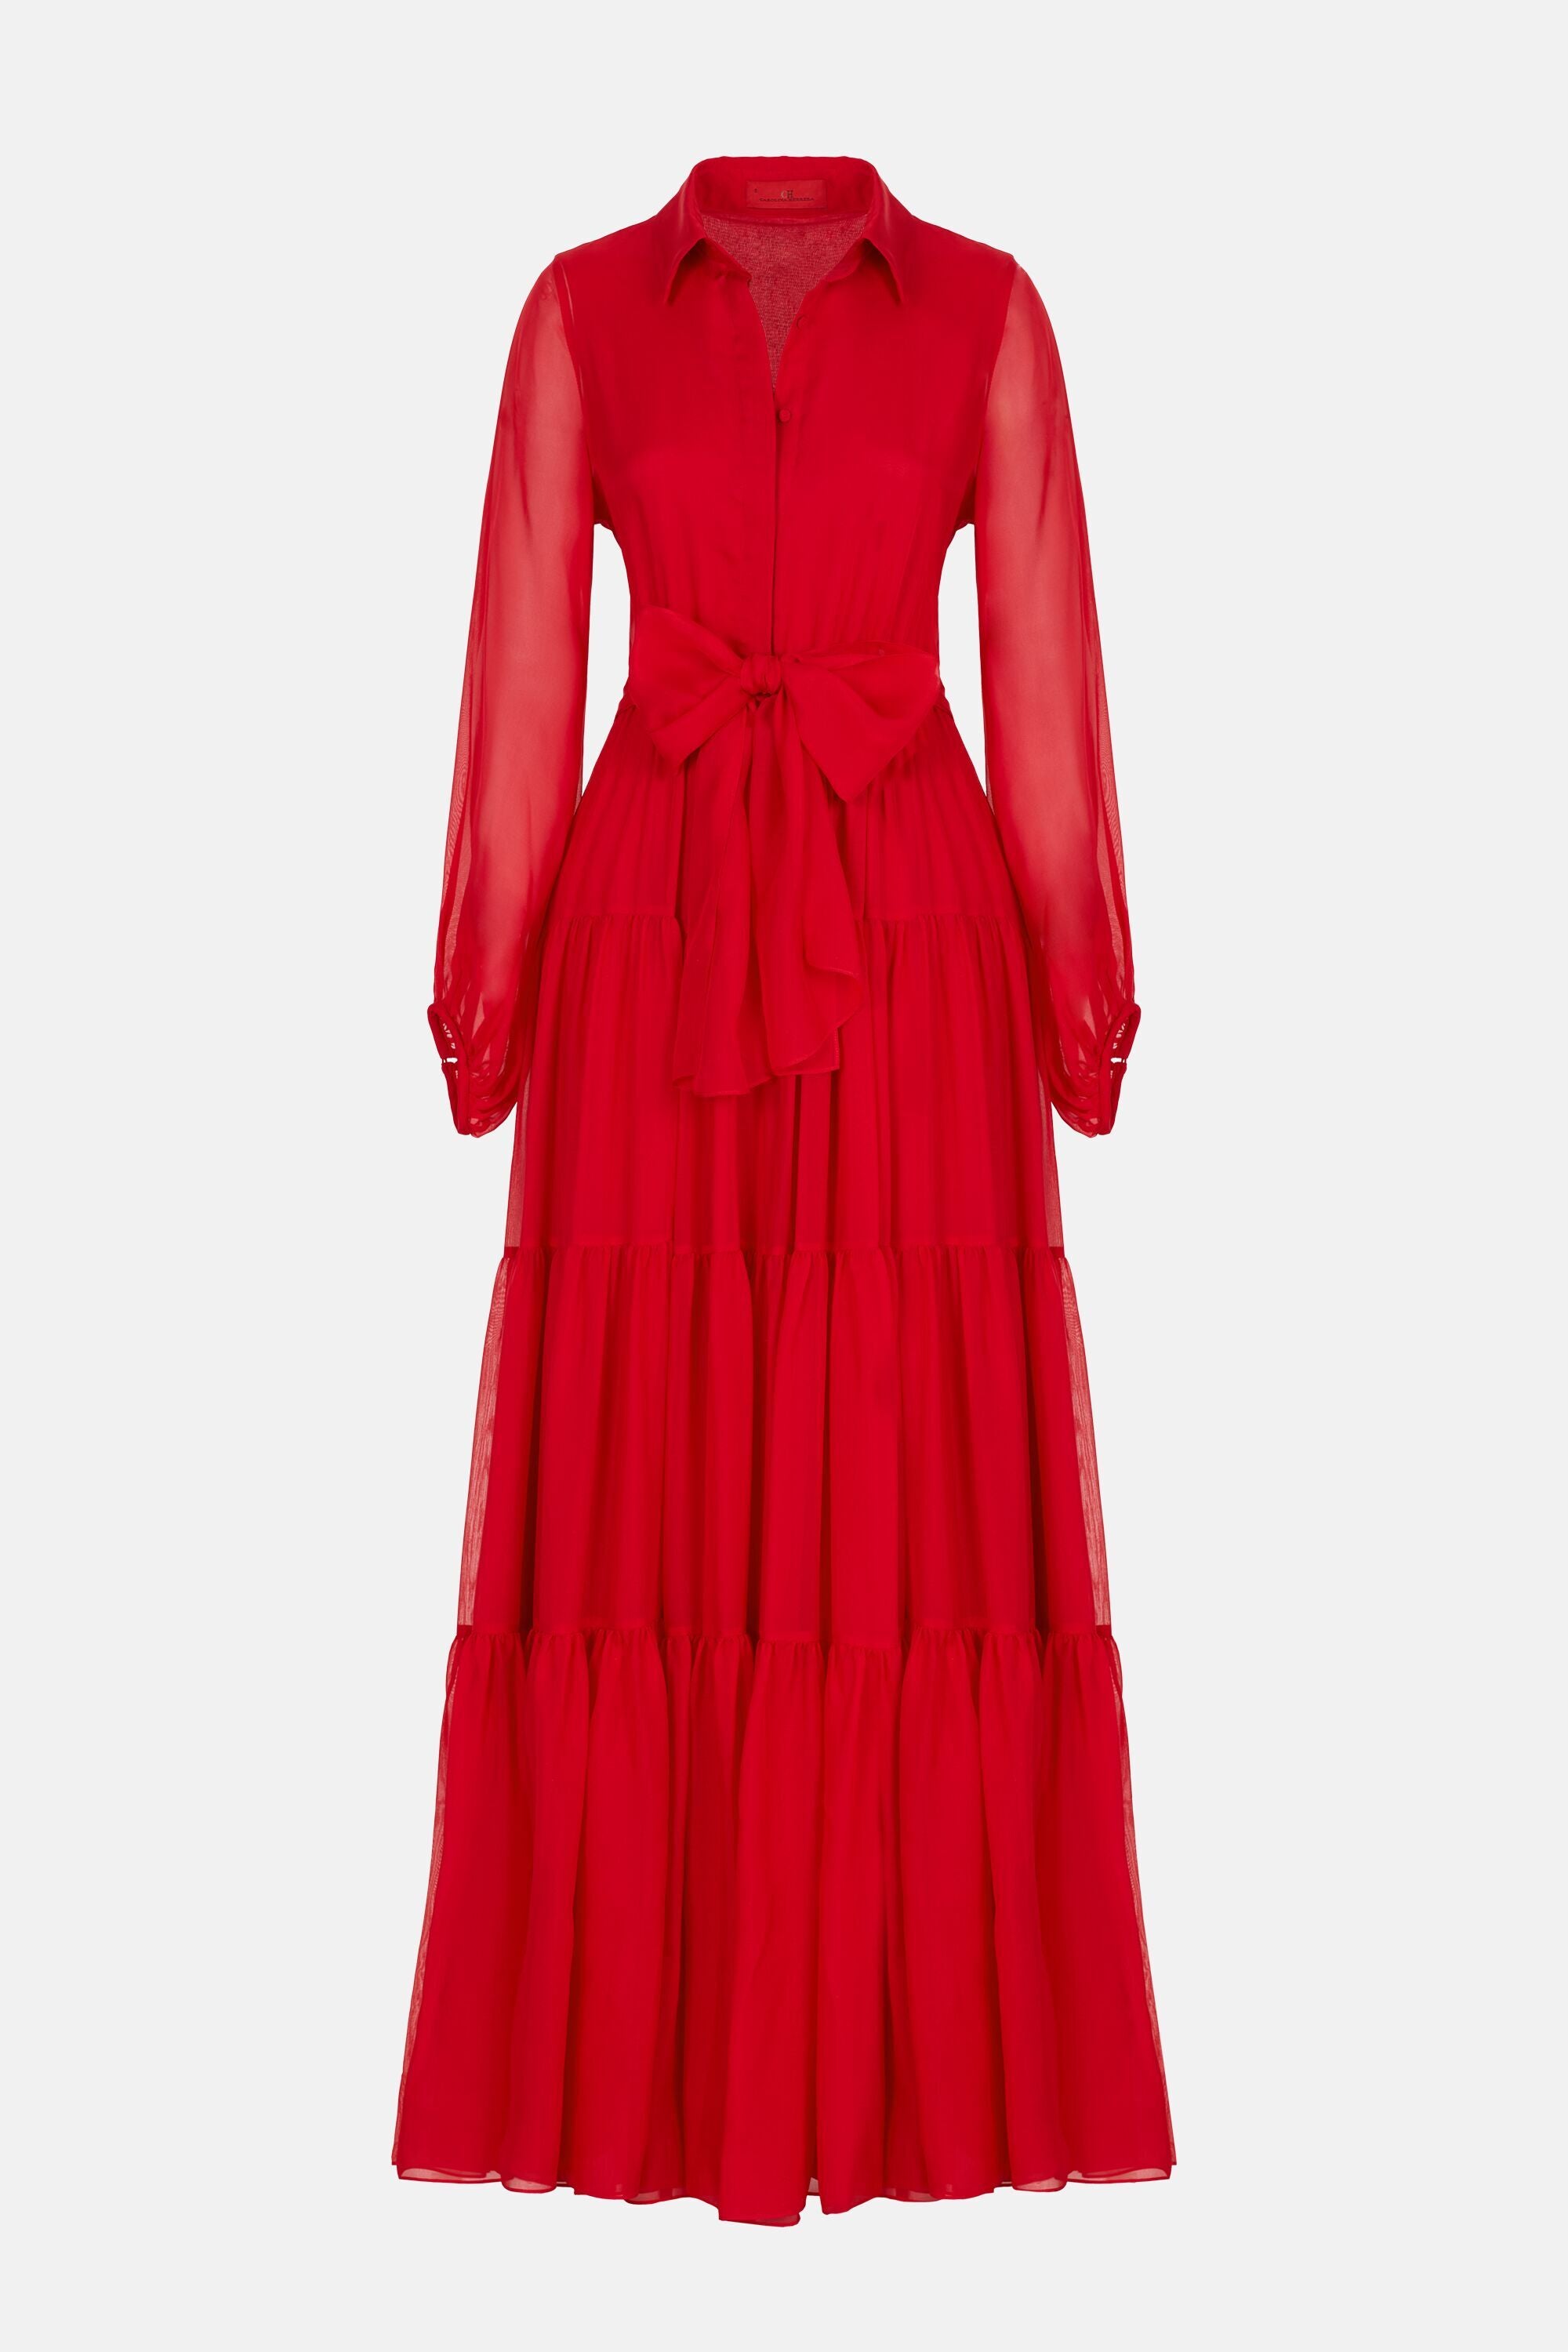 Red chiffon dress